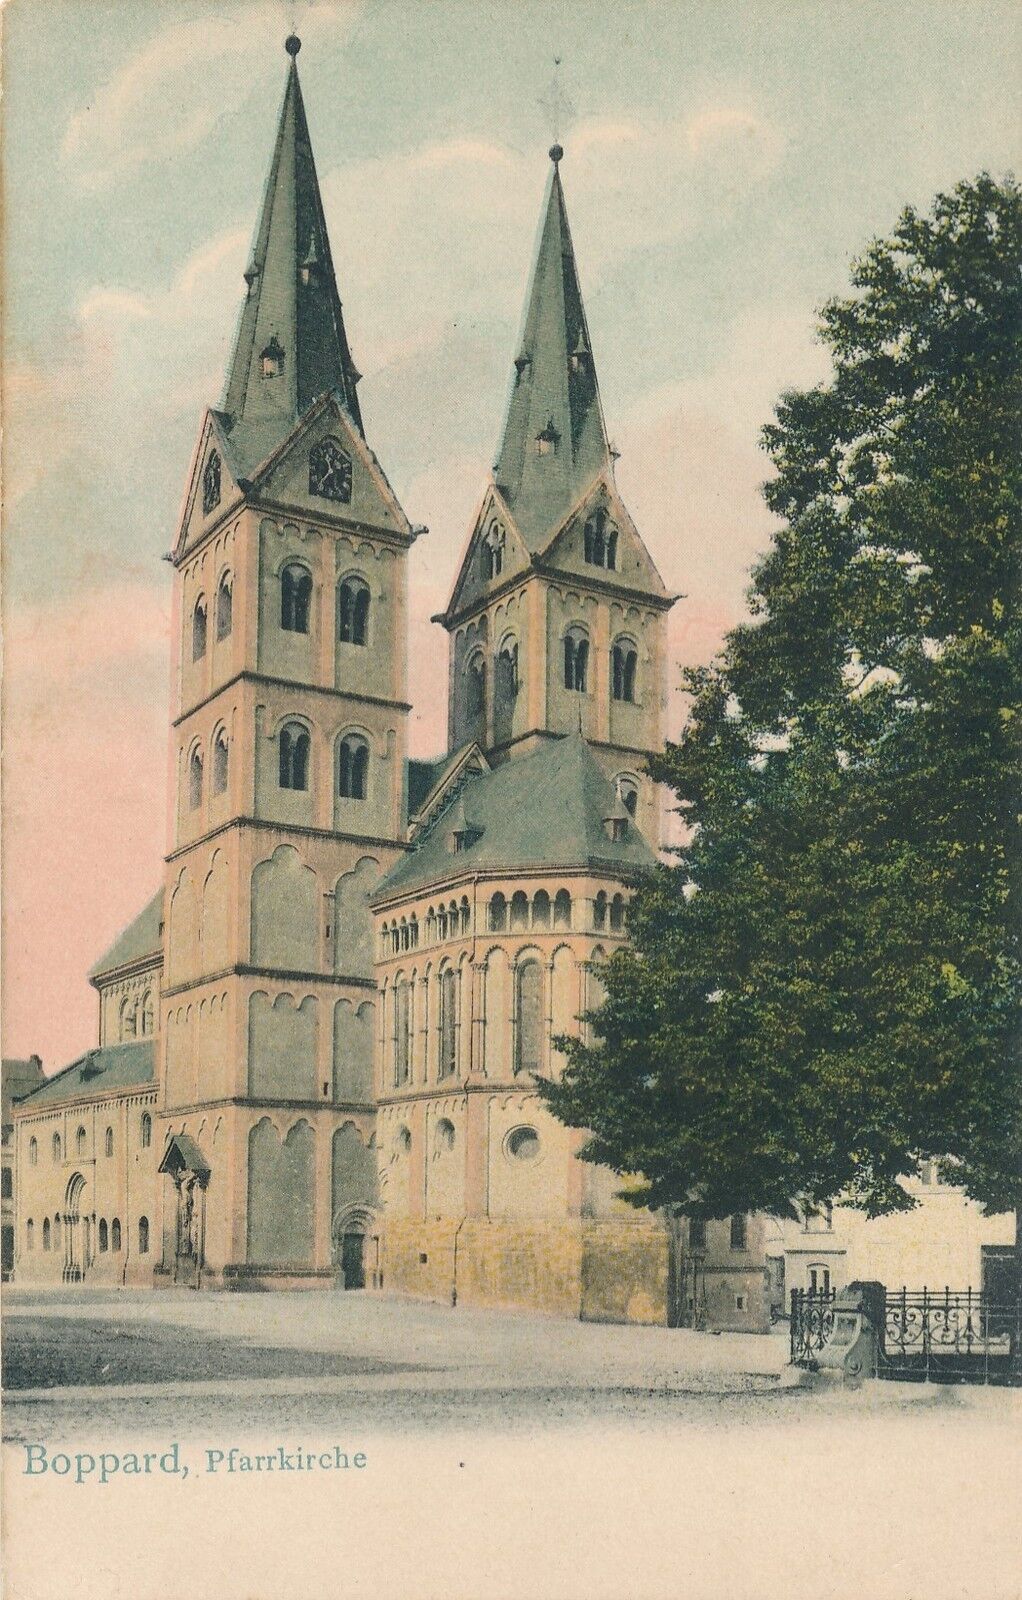 BOPPARD – Pfarrkirche – Germany – udb (pre 1908)